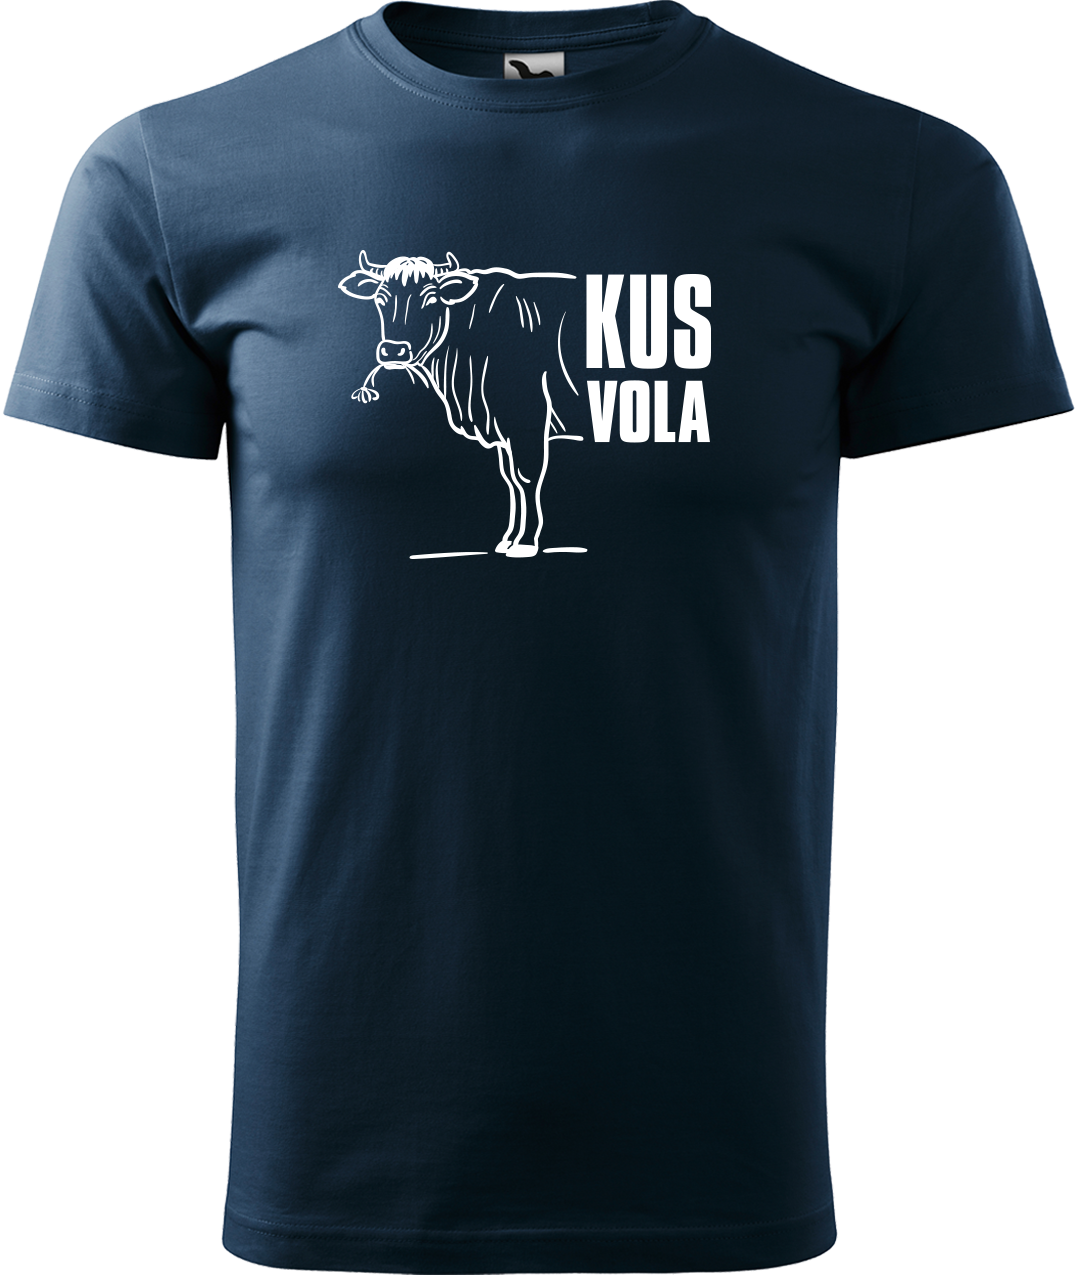 Pánské vtipné tričko - Kus vola Velikost: XL, Barva: Námořní modrá (02)